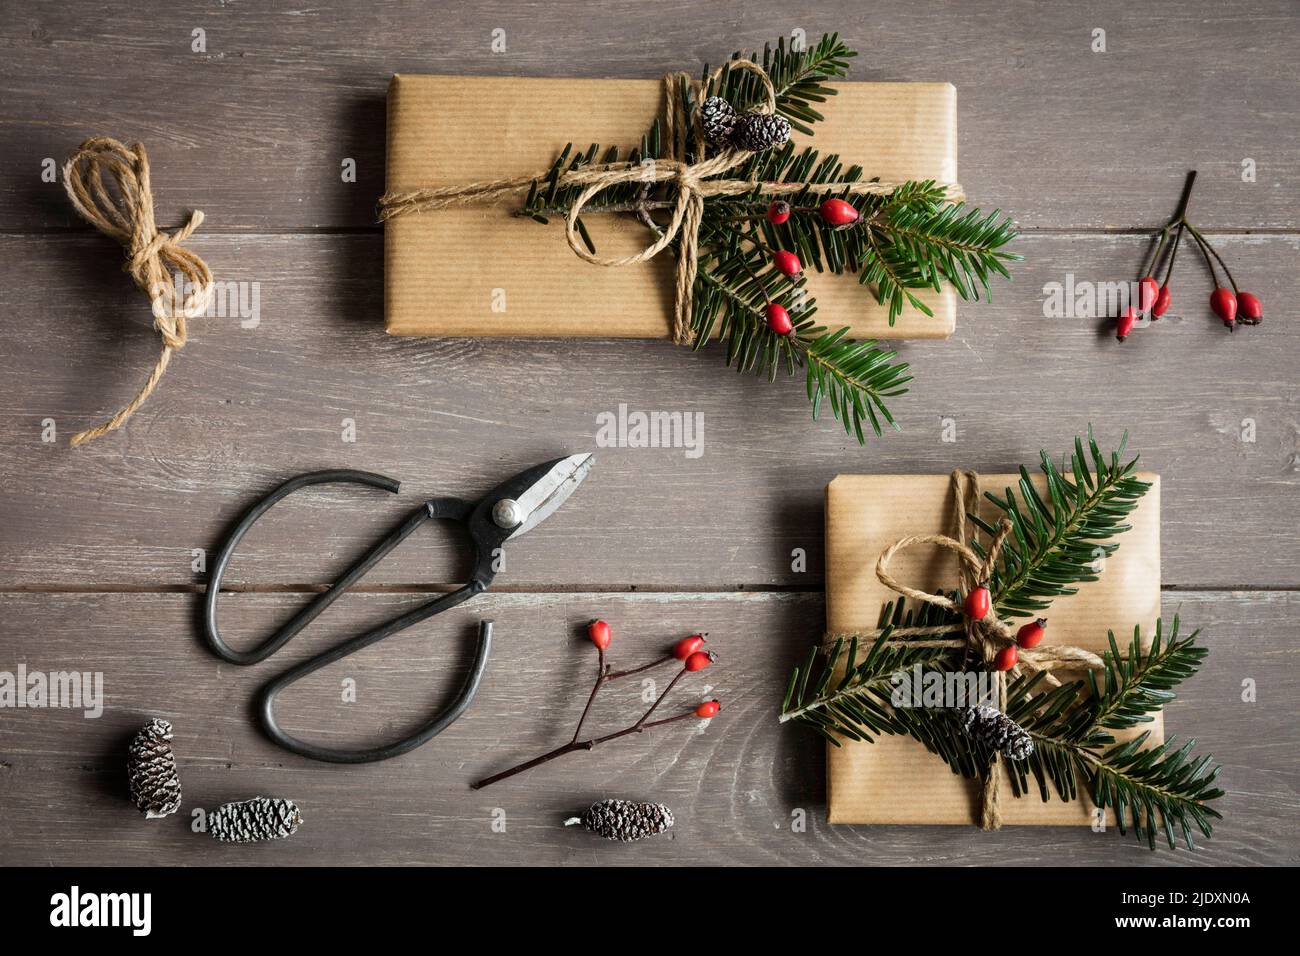 Studioaufnahme von natürlich gewickelten Weihnachtsgeschenken, die mit Fichtenzweigen verziert sind Stockfoto